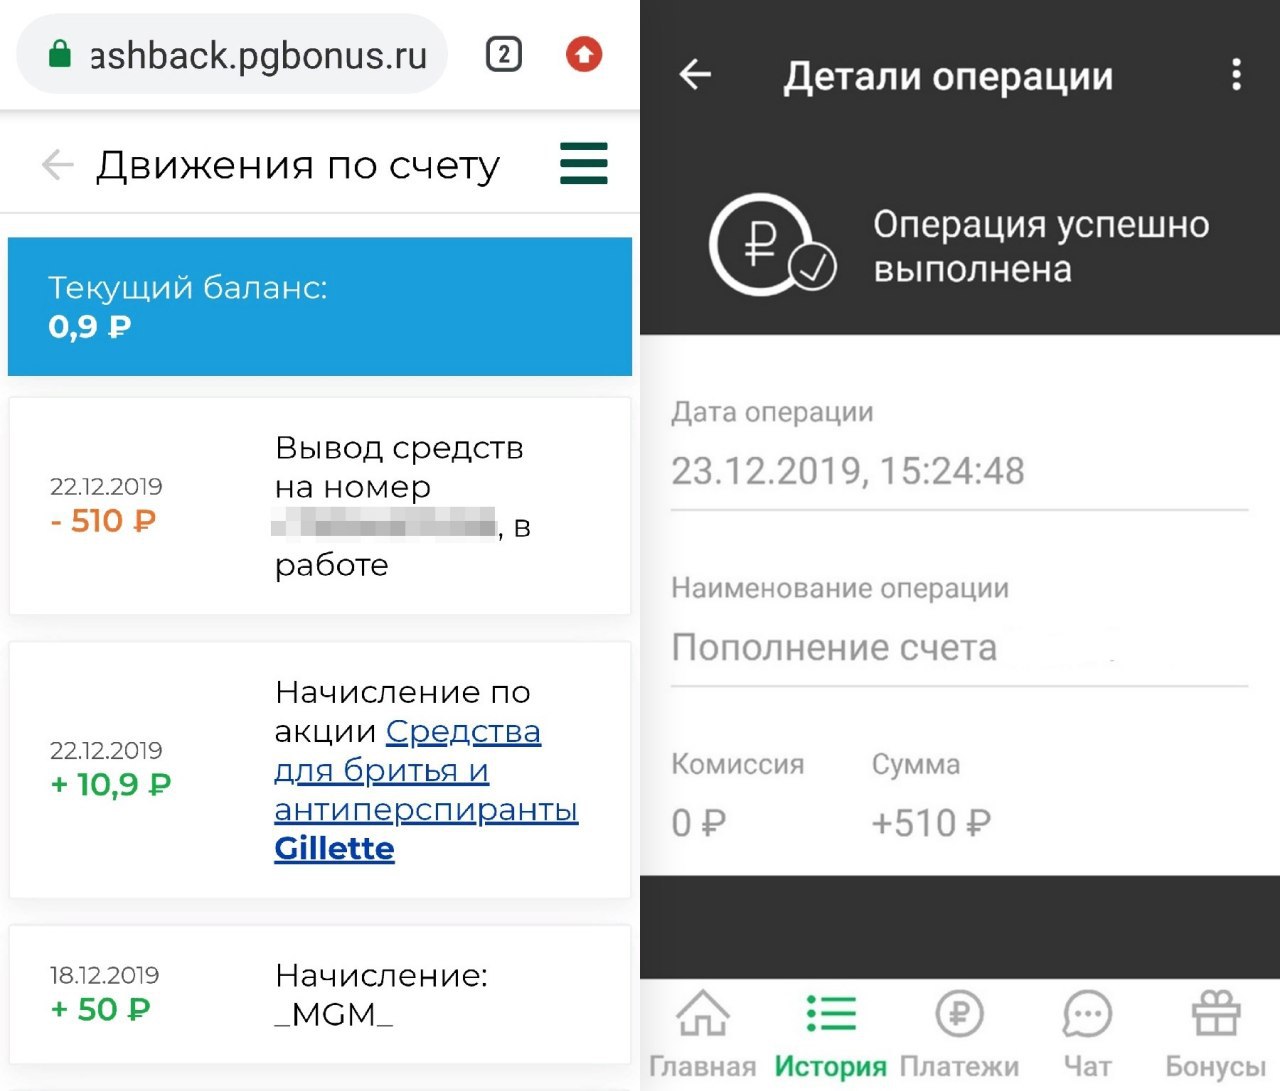 Заработок в телеграмме без вложений с выводом денег на карту сбербанка на русском языке фото 60